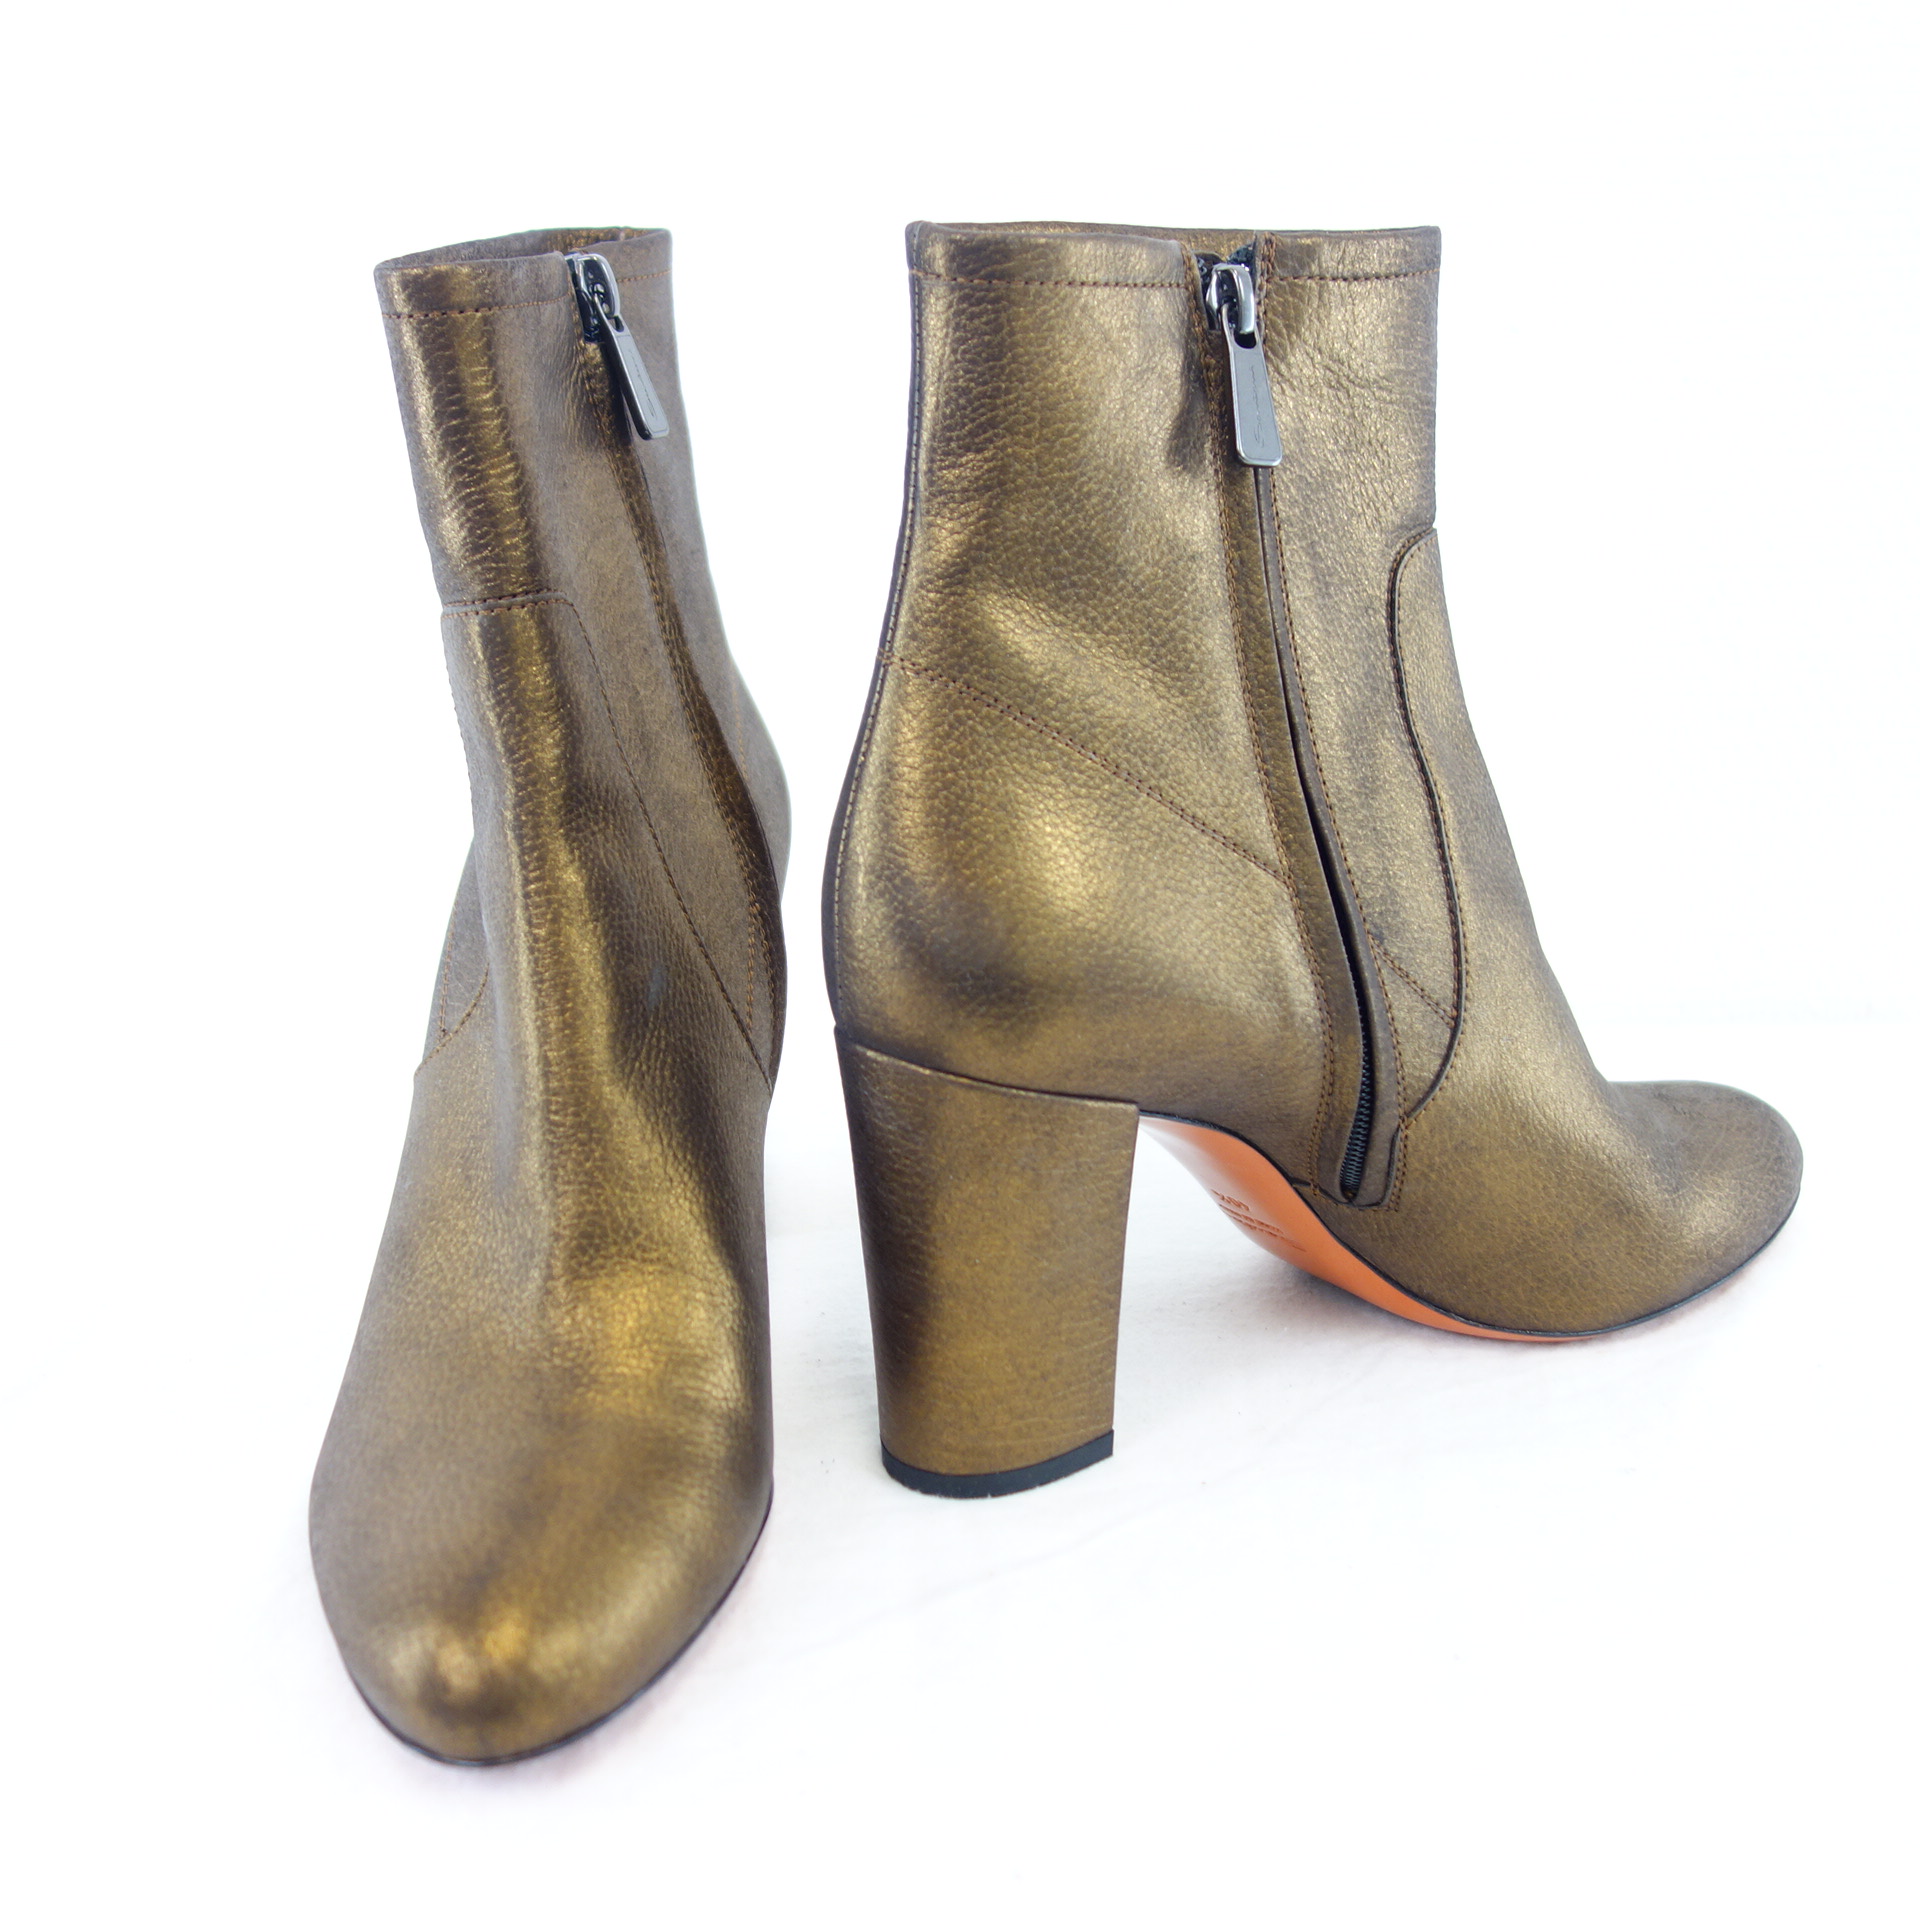 SANTONI Stiefeletten Schuhe Braun Bronze Schimmer Absatz Leder Größe 40,5